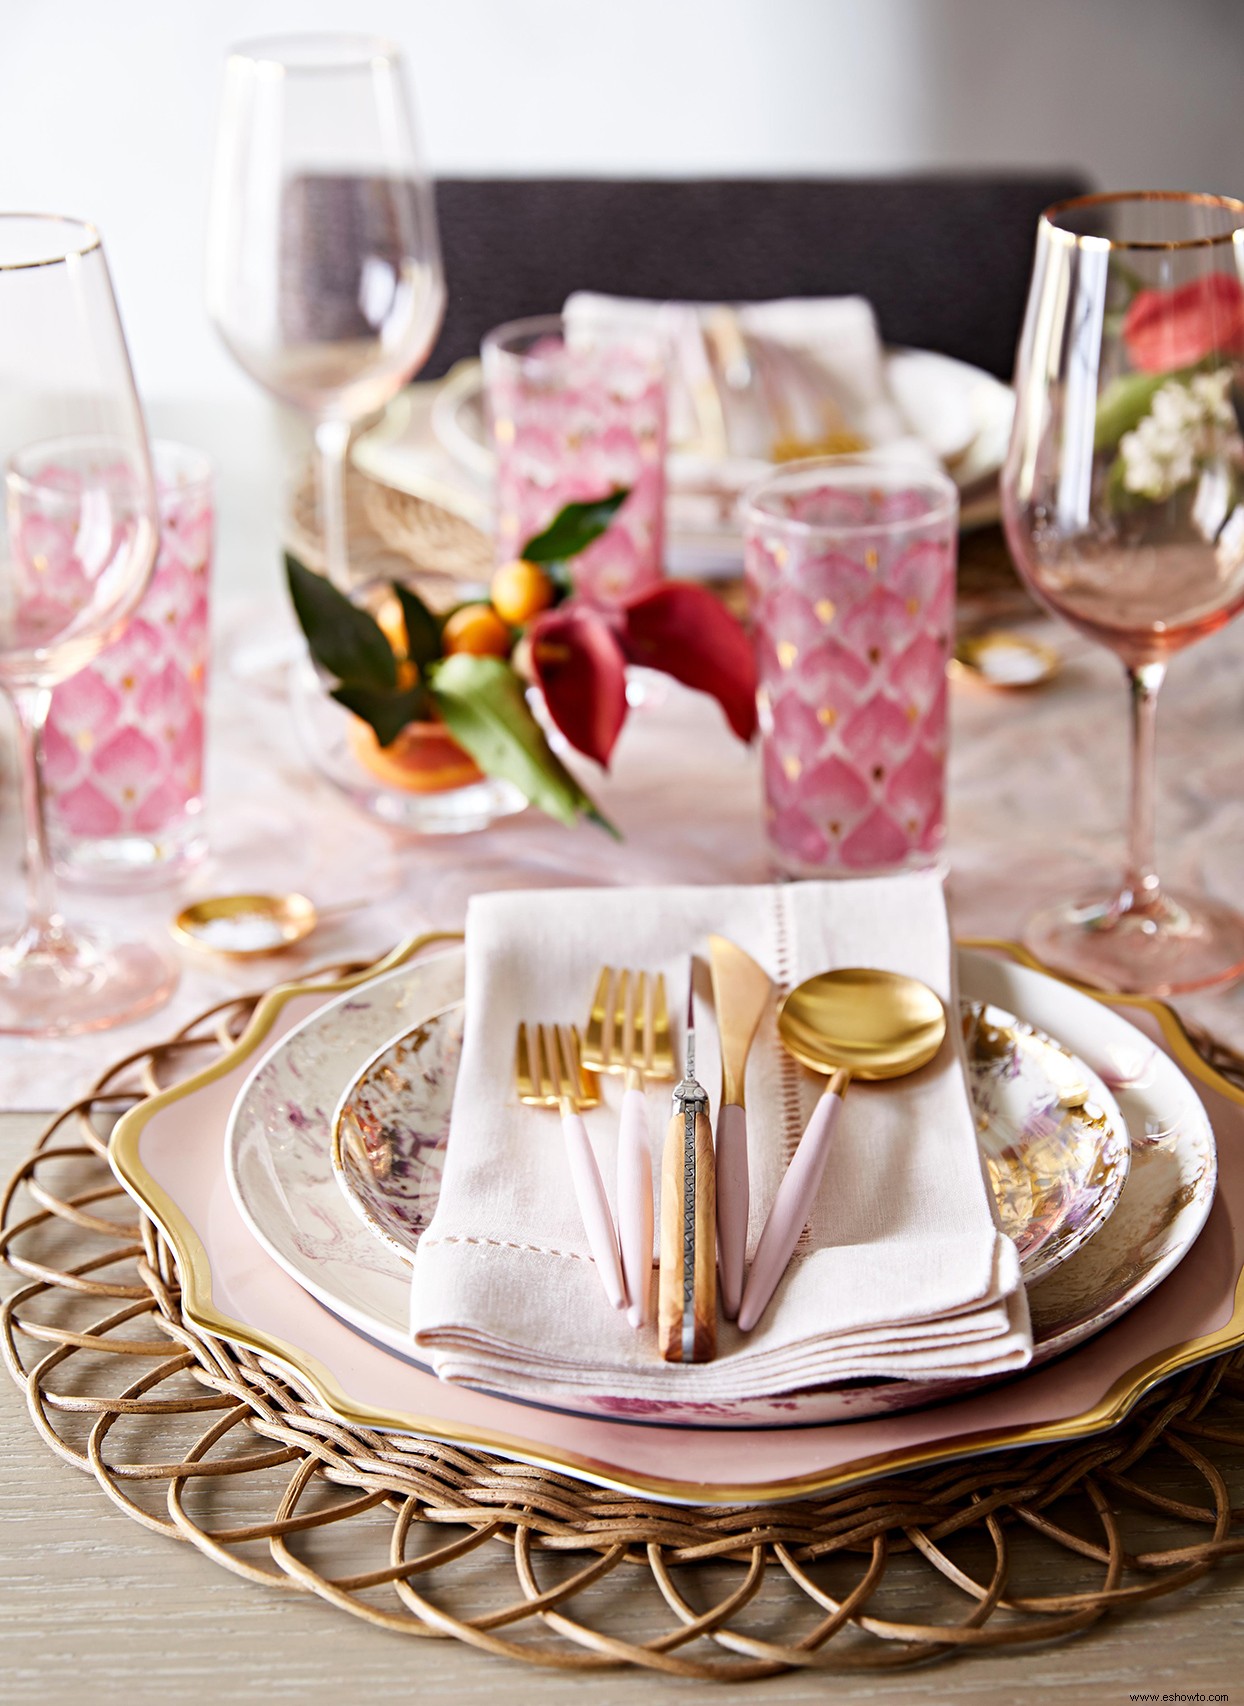 Detalles de mesa en rosa polvoriento crean un entorno acogedor para esta cena de otoño 